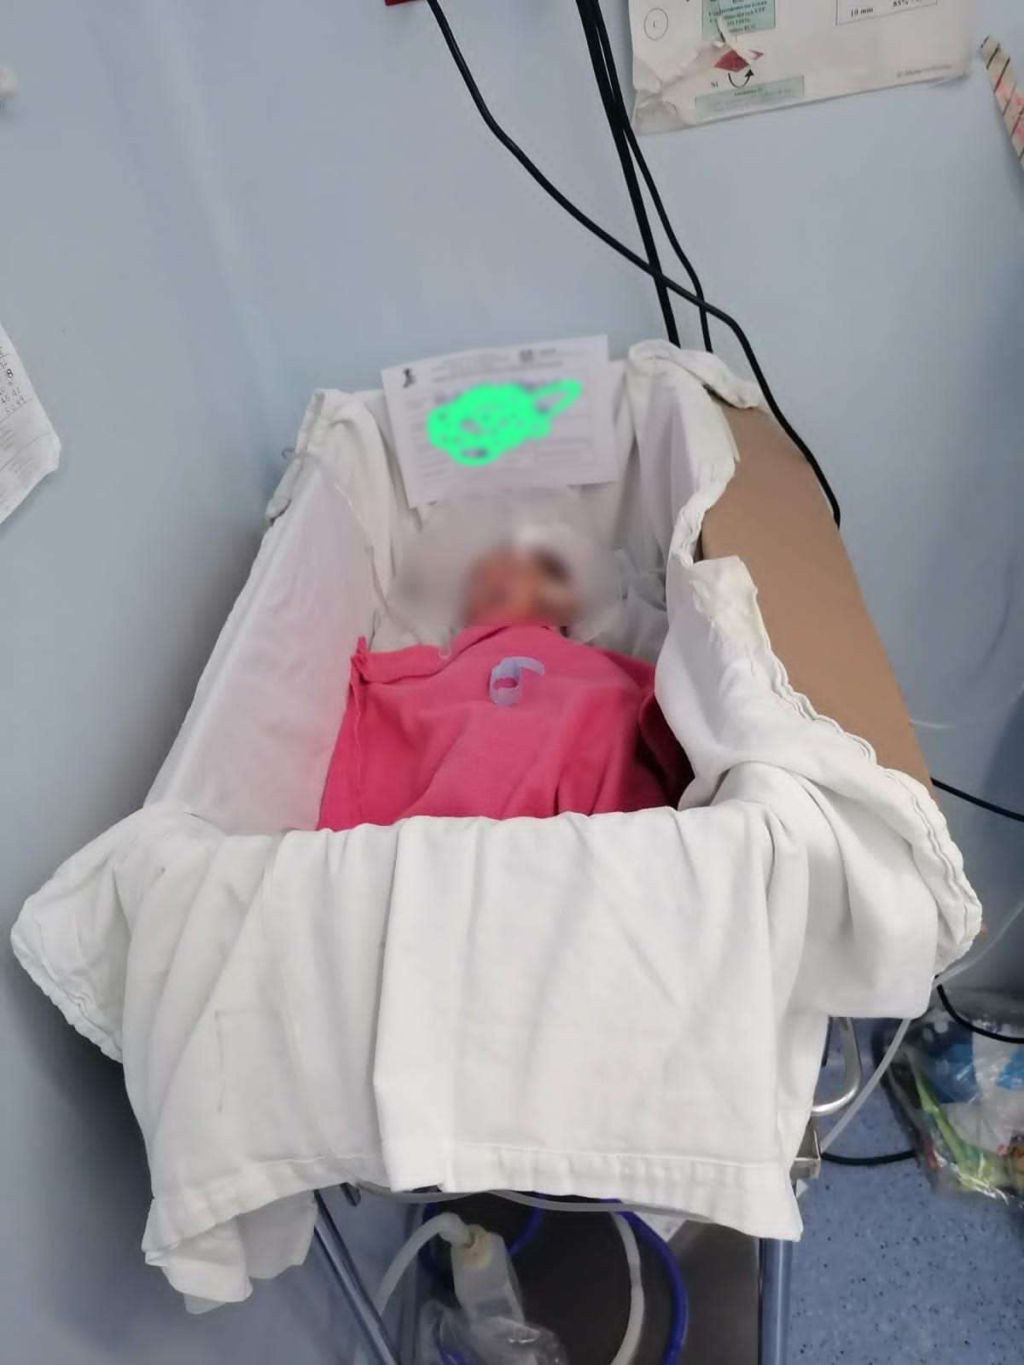 Colocan a recién nacido en caja de cartón en Hospital Civil de Oaxaca; despiden a responsable